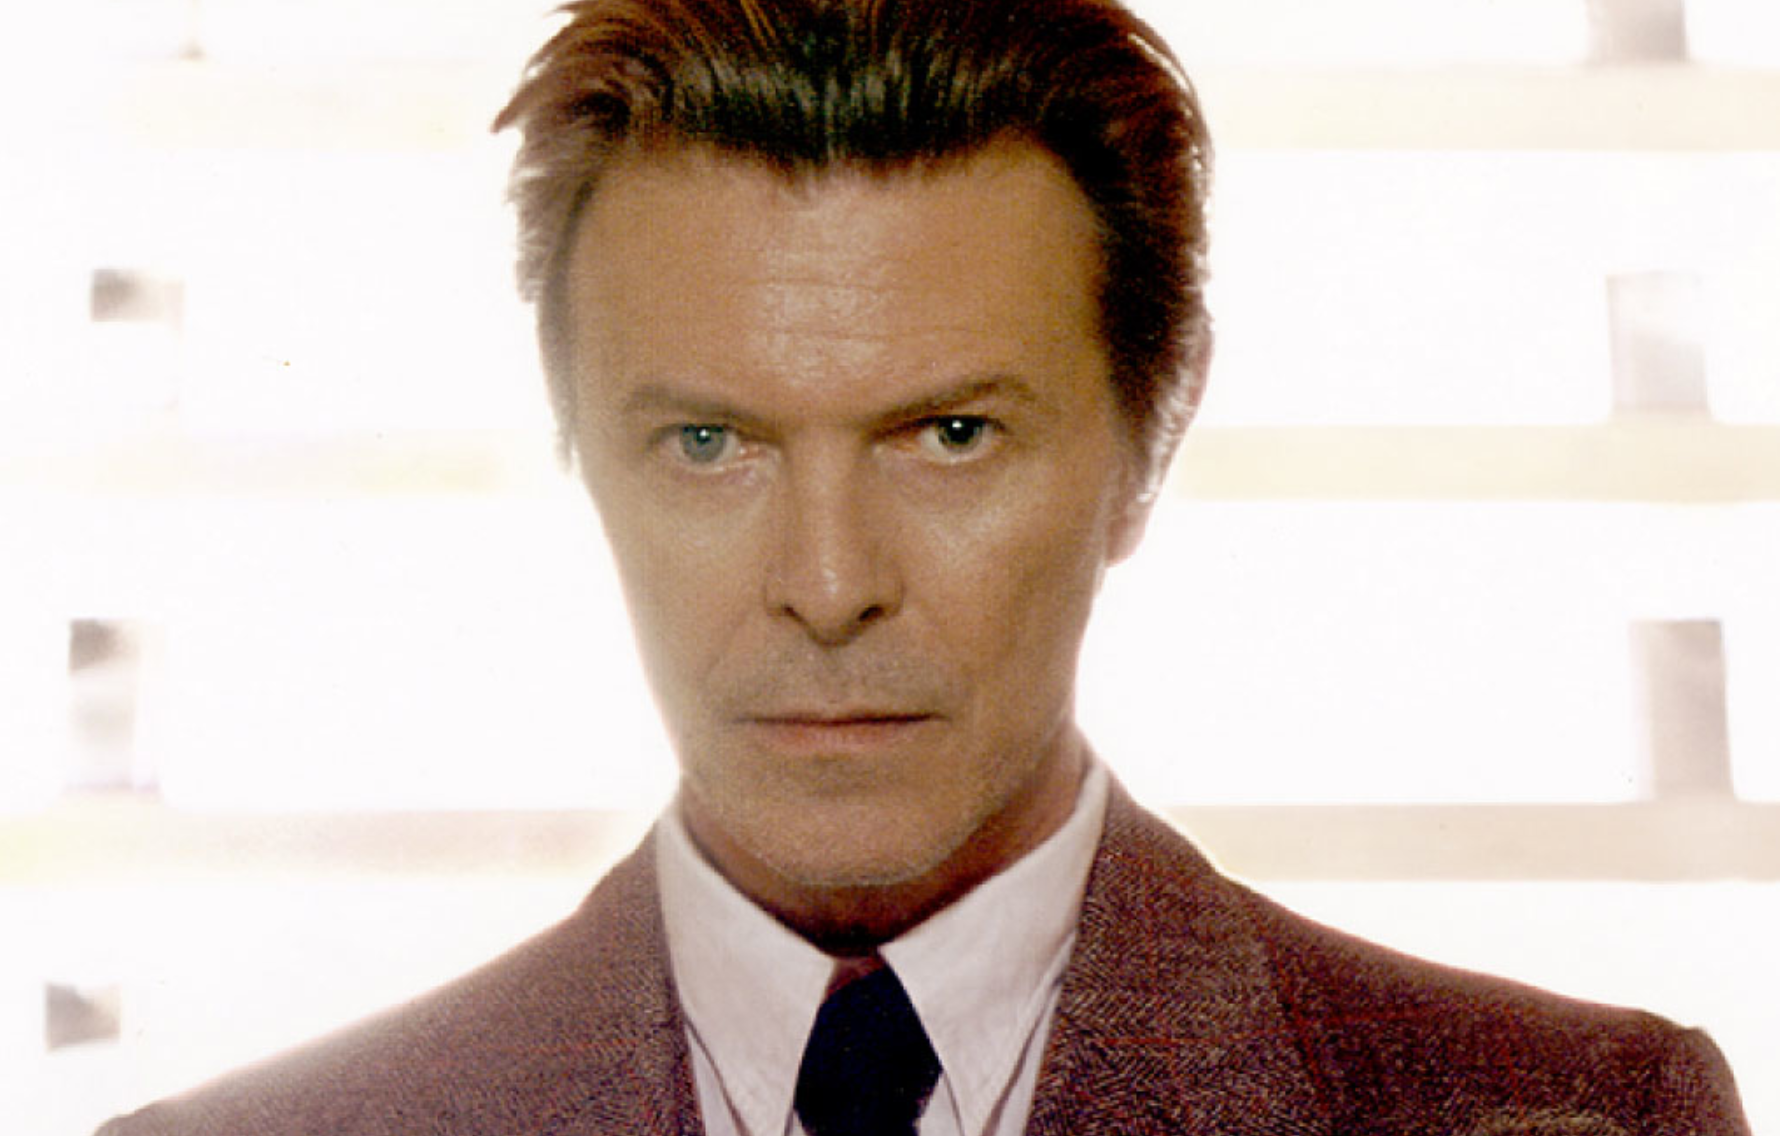 Di Che Colore Erano Gli Occhi Di David Bowie Bigodino